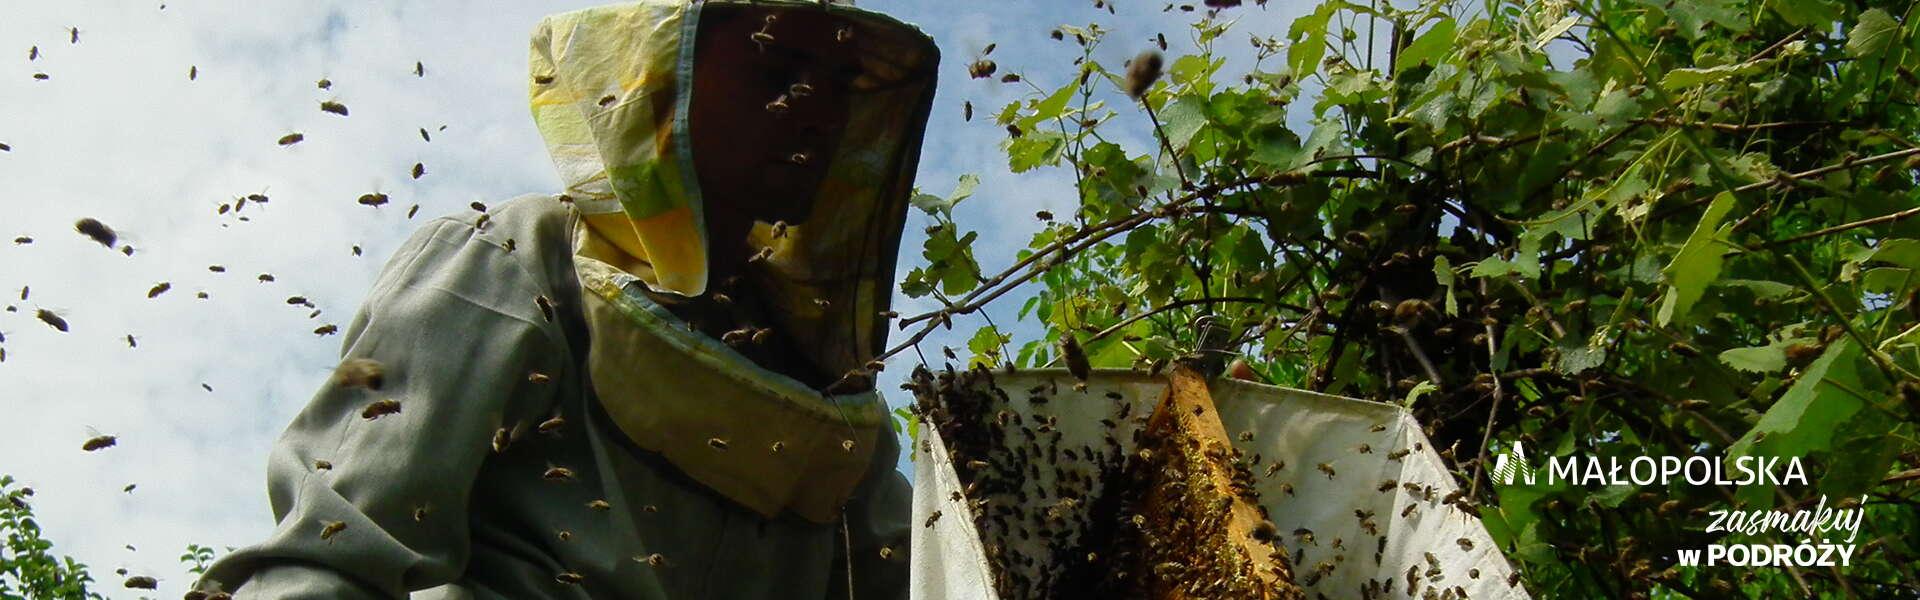 Pszczelarz ubrany w strój ochronny podczas pracy, wokół dużo pszczół, w prawym dolnym rogu logo Małopolski i napis zasmakuj w podróży